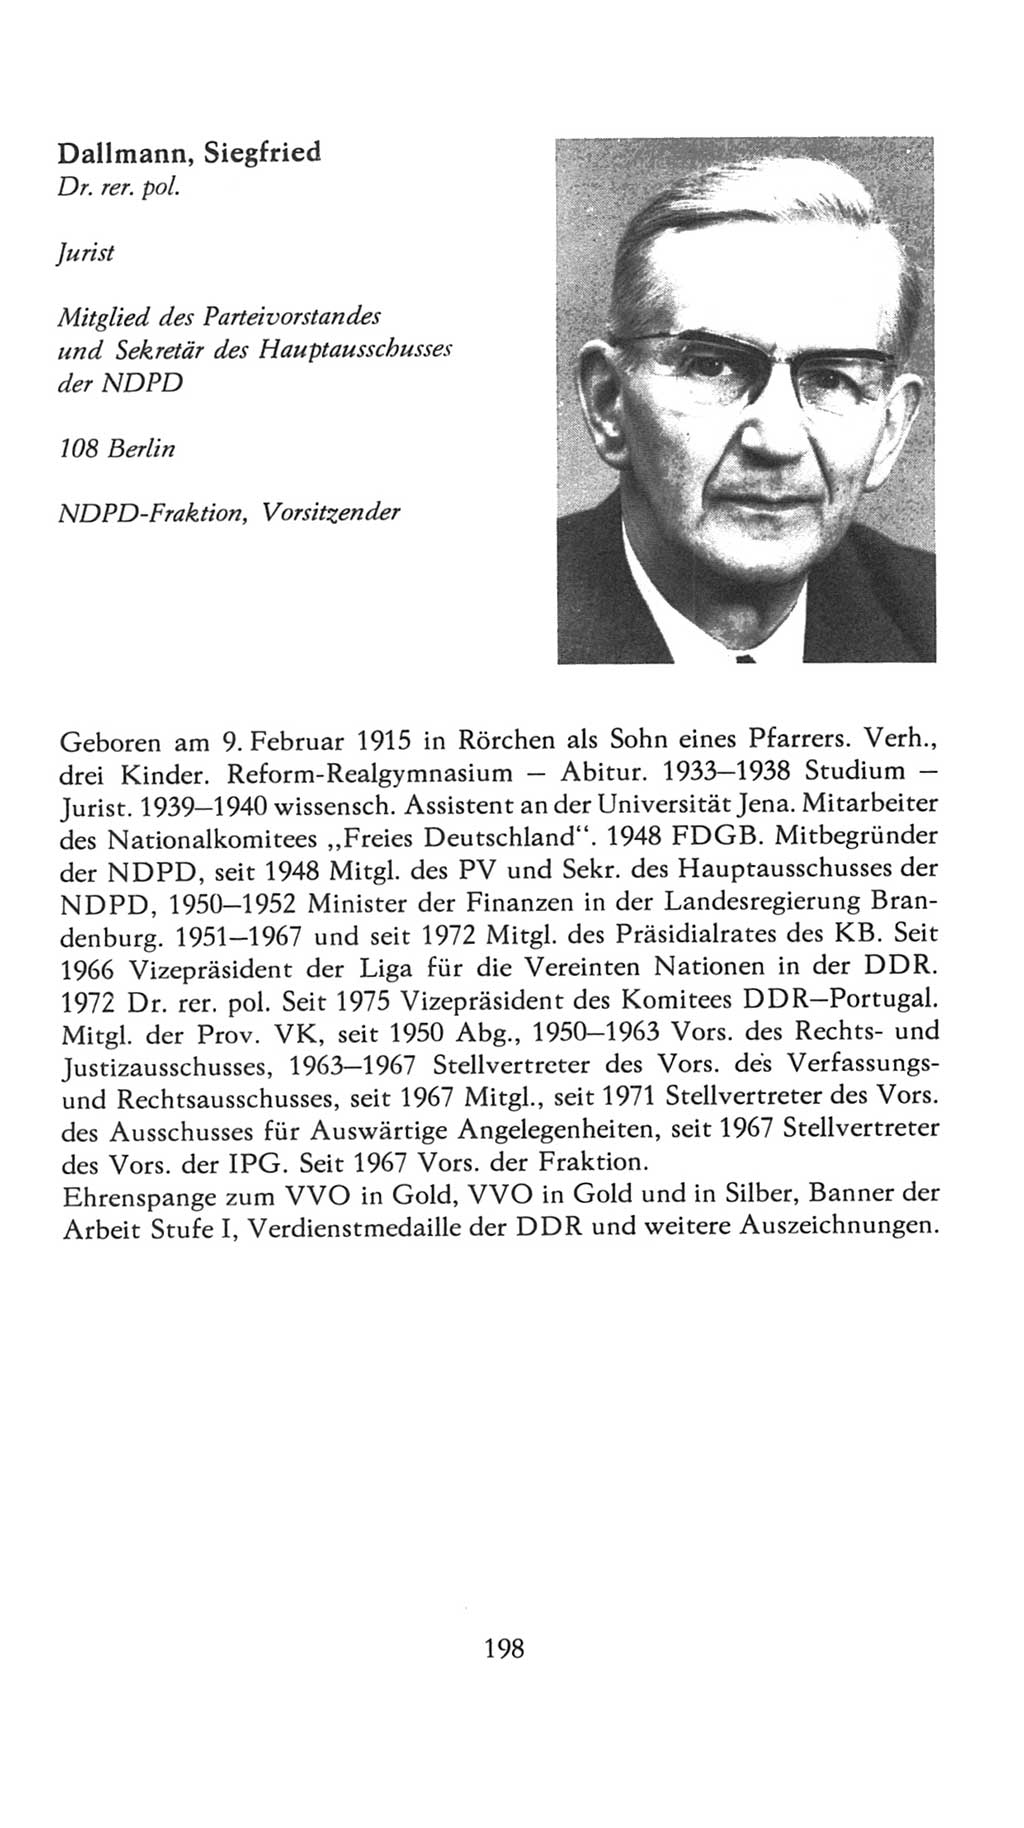 Volkskammer (VK) der Deutschen Demokratischen Republik (DDR), 7. Wahlperiode 1976-1981, Seite 198 (VK. DDR 7. WP. 1976-1981, S. 198)